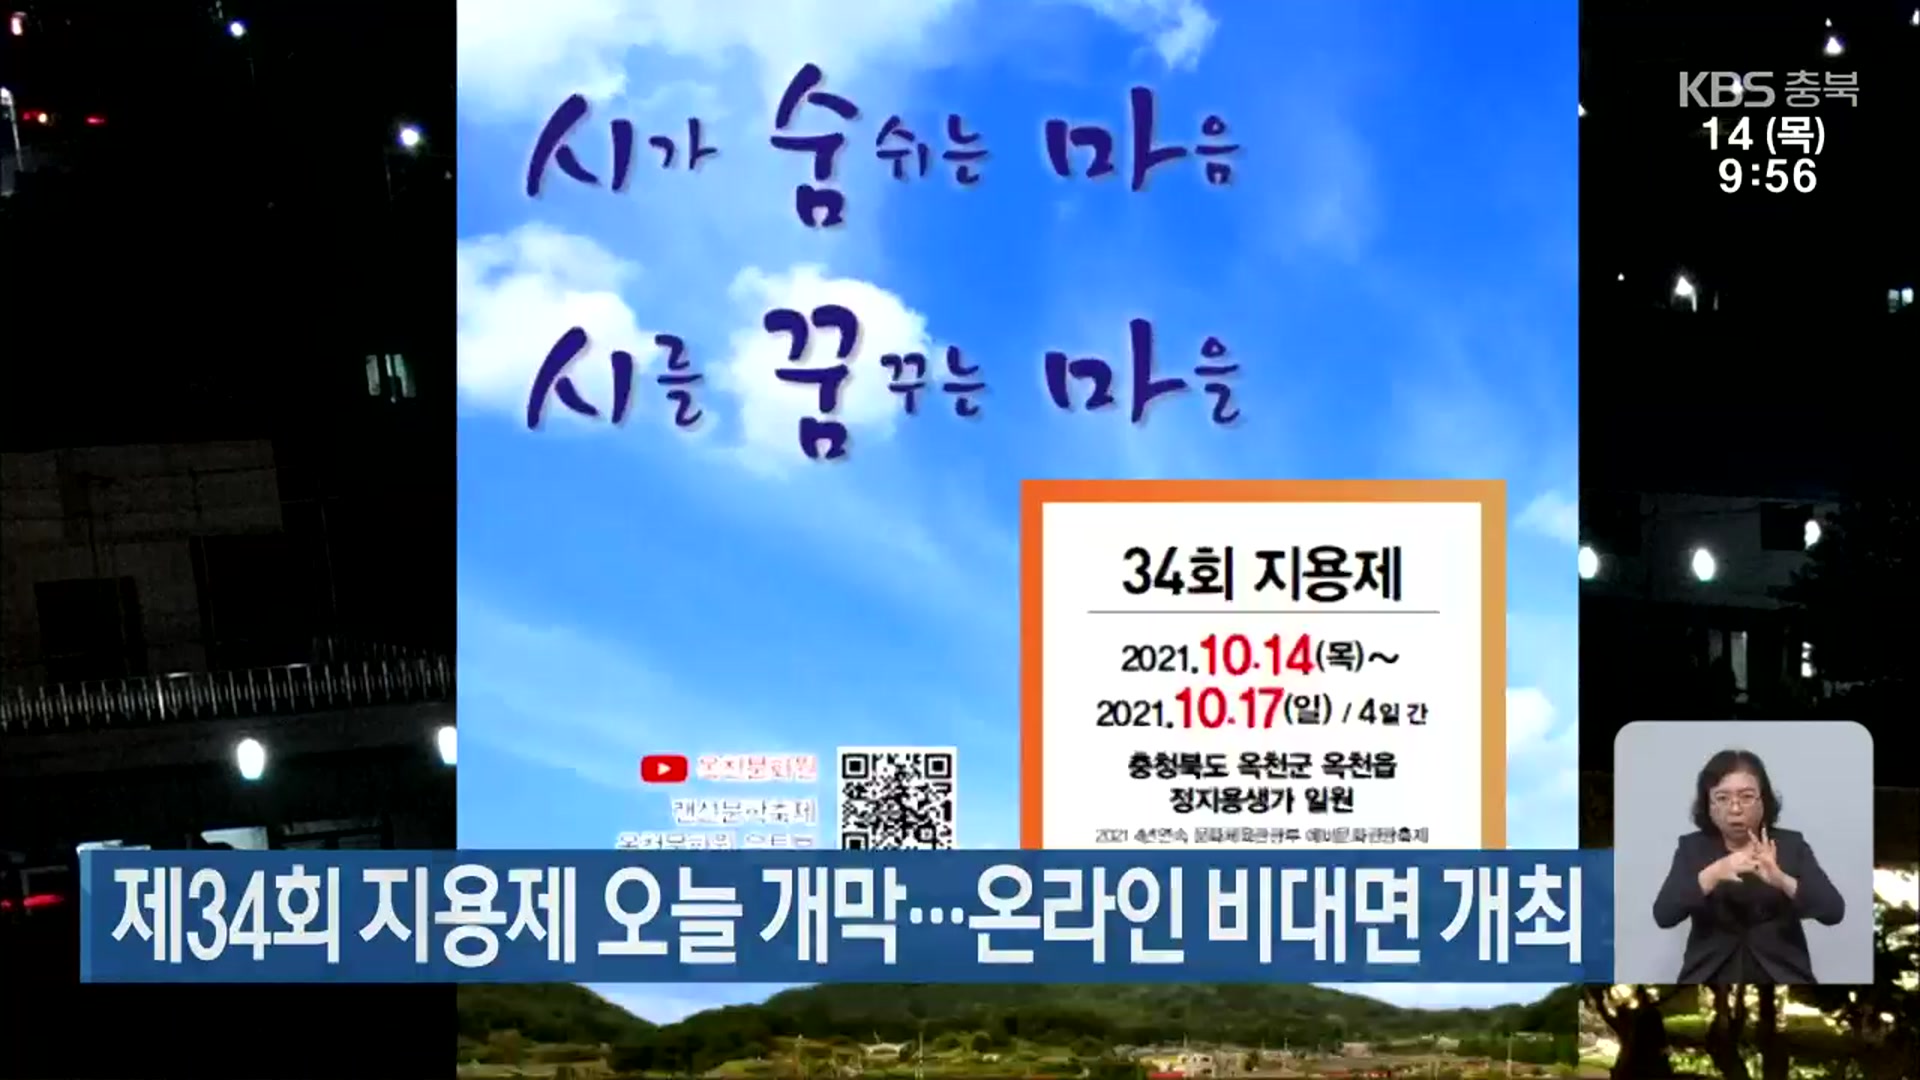 제34회 지용제 오늘 개막…온라인 비대면 개최